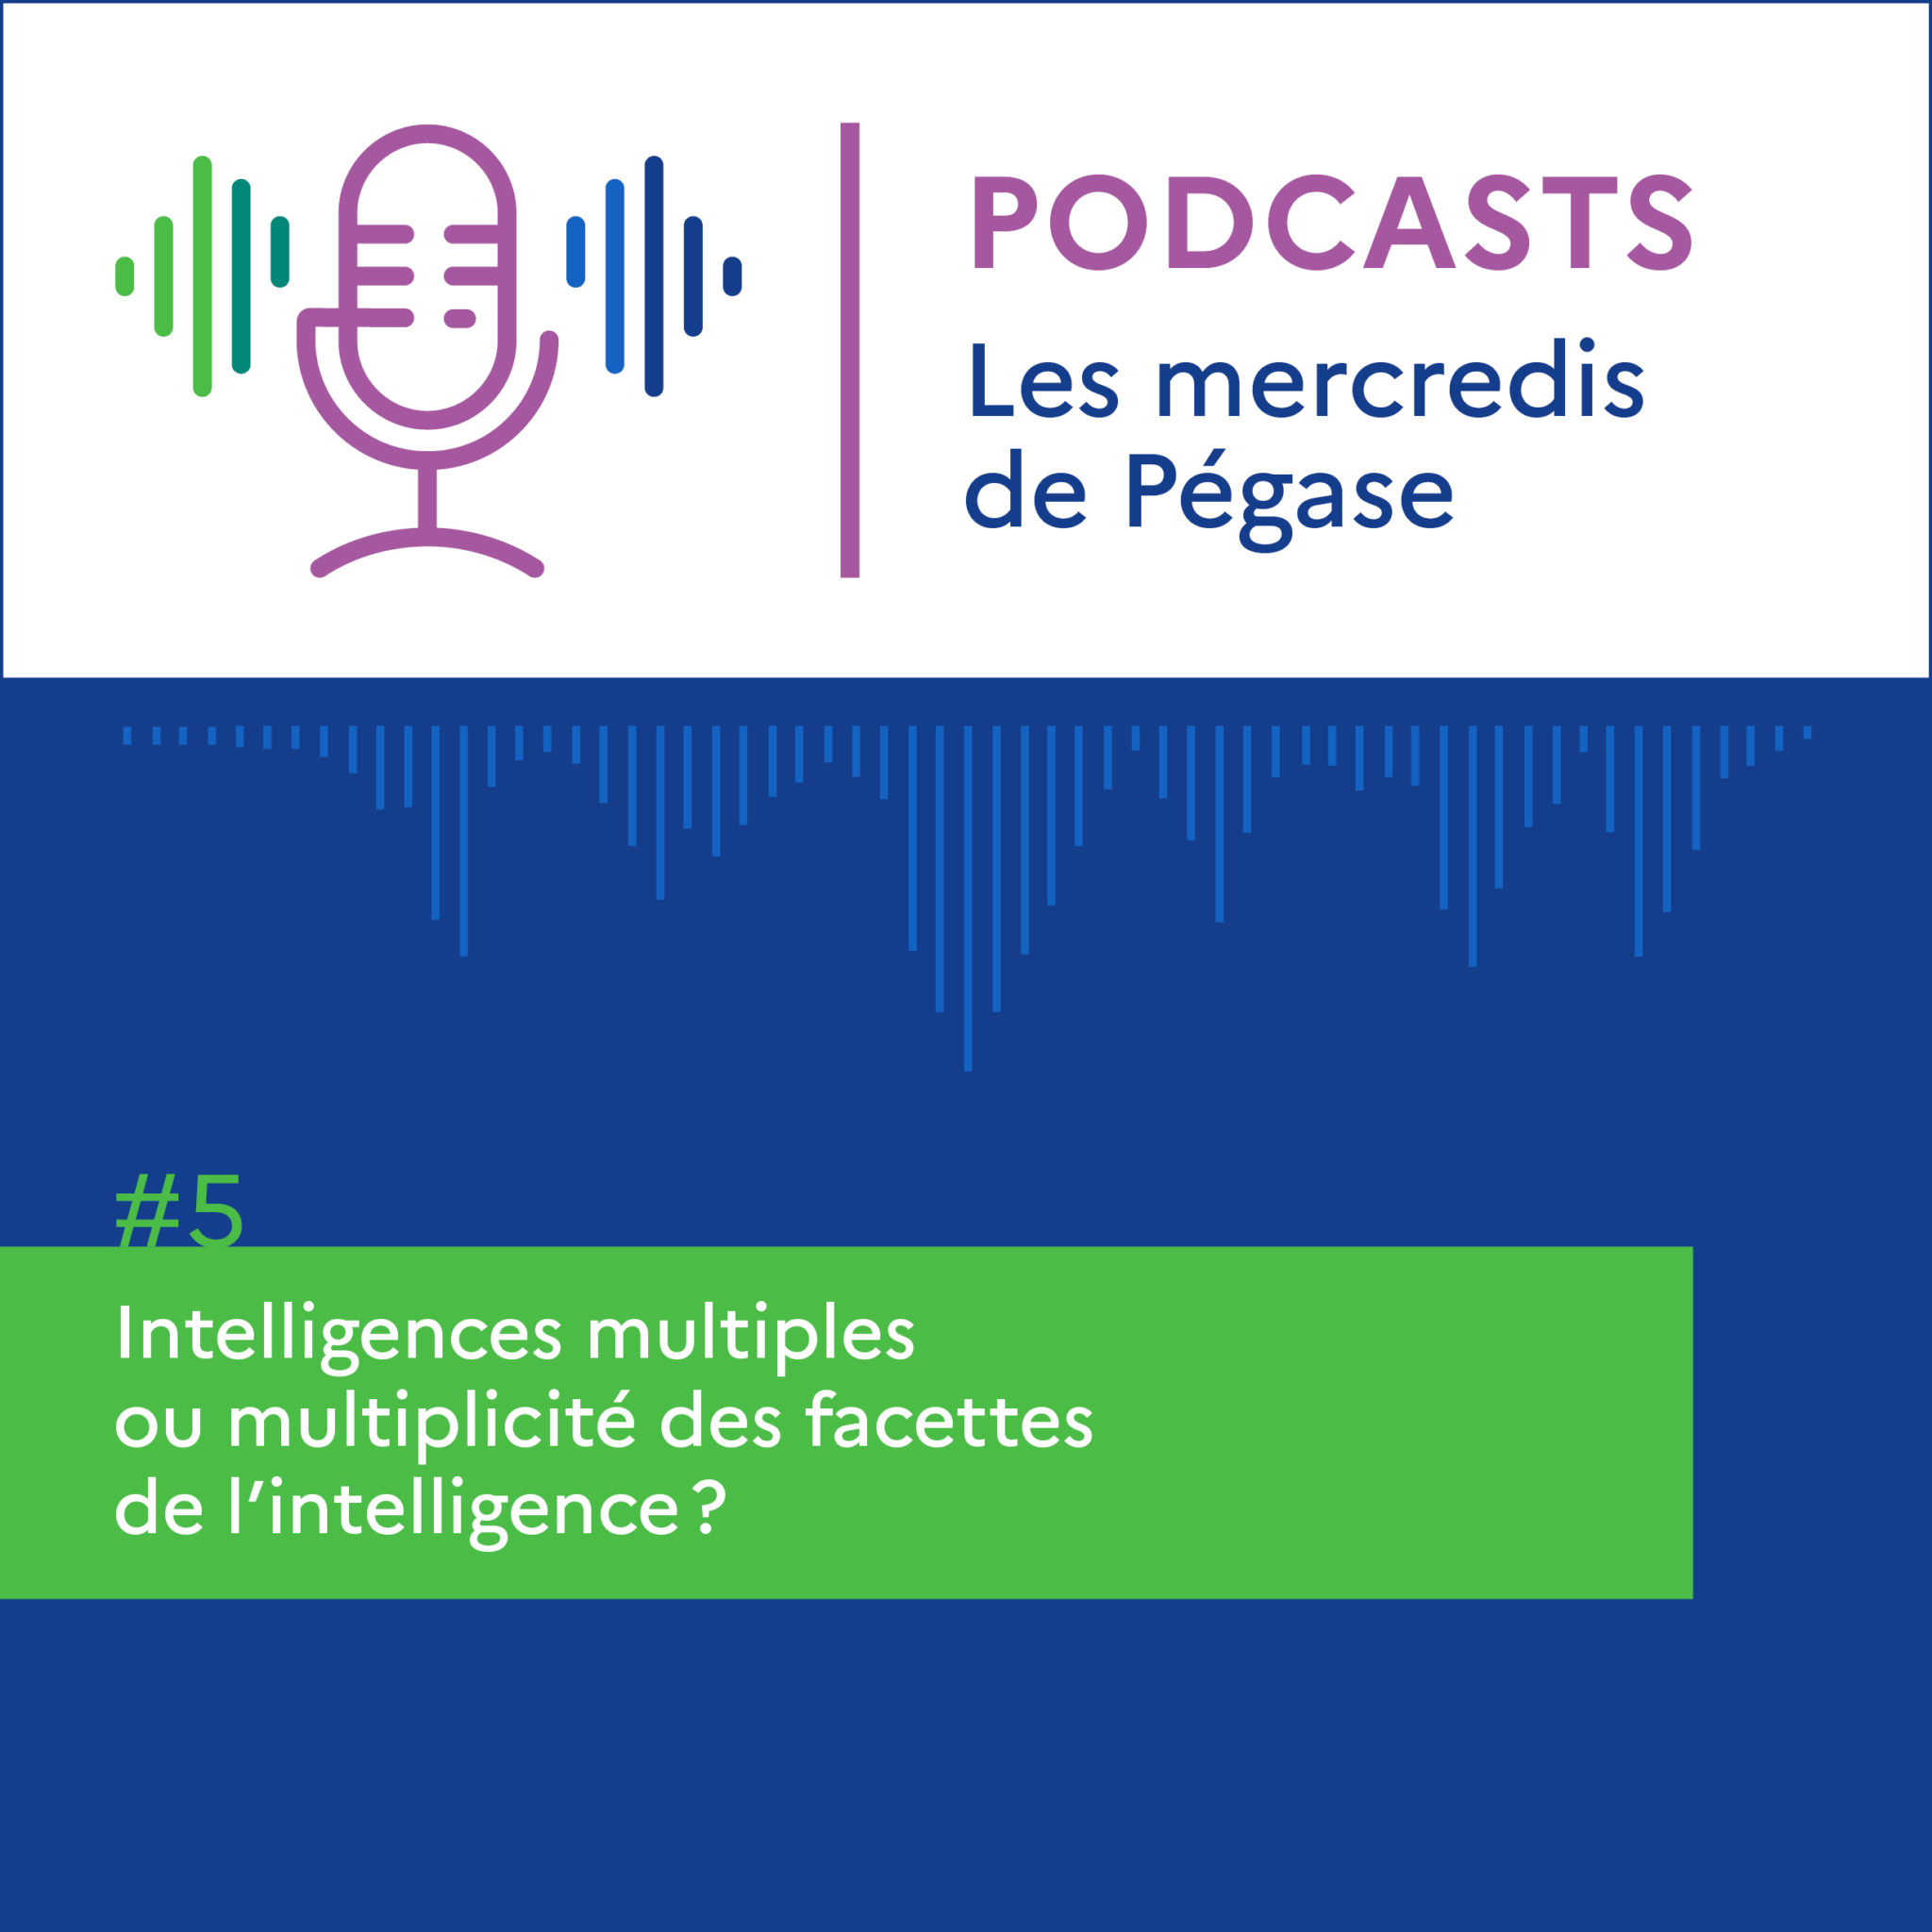 [Podcast] Mercredis de Pégase #5 : Intelligences multiples